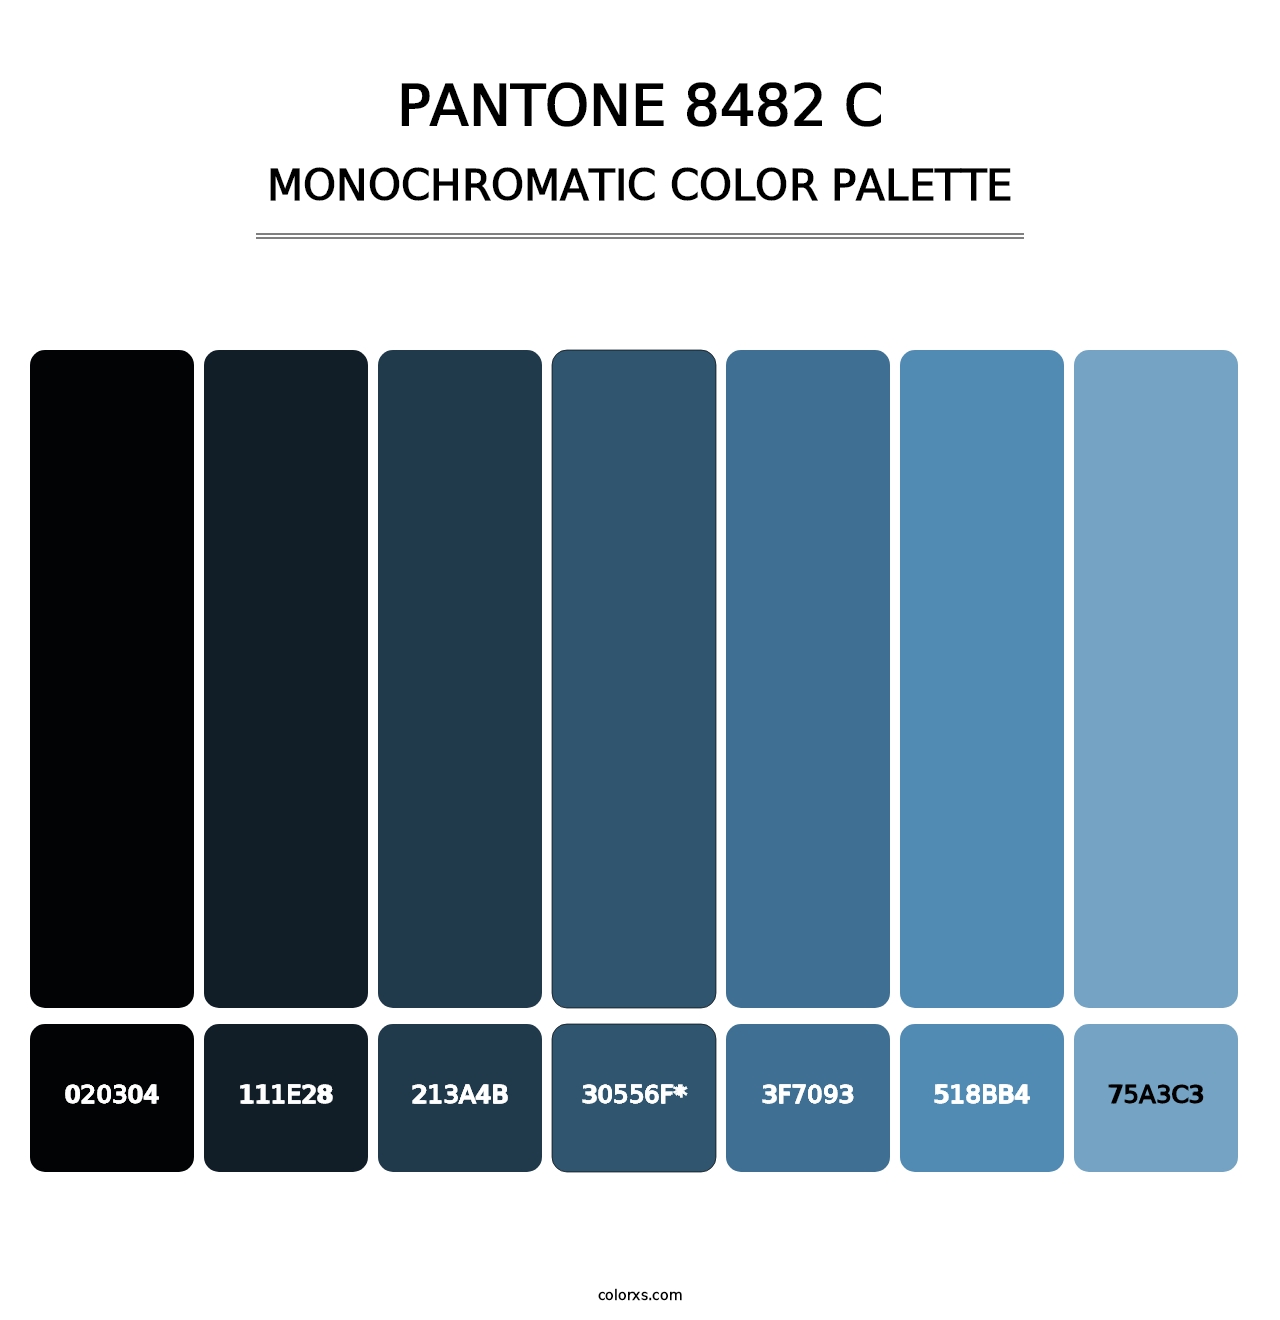 PANTONE 8482 C - Monochromatic Color Palette